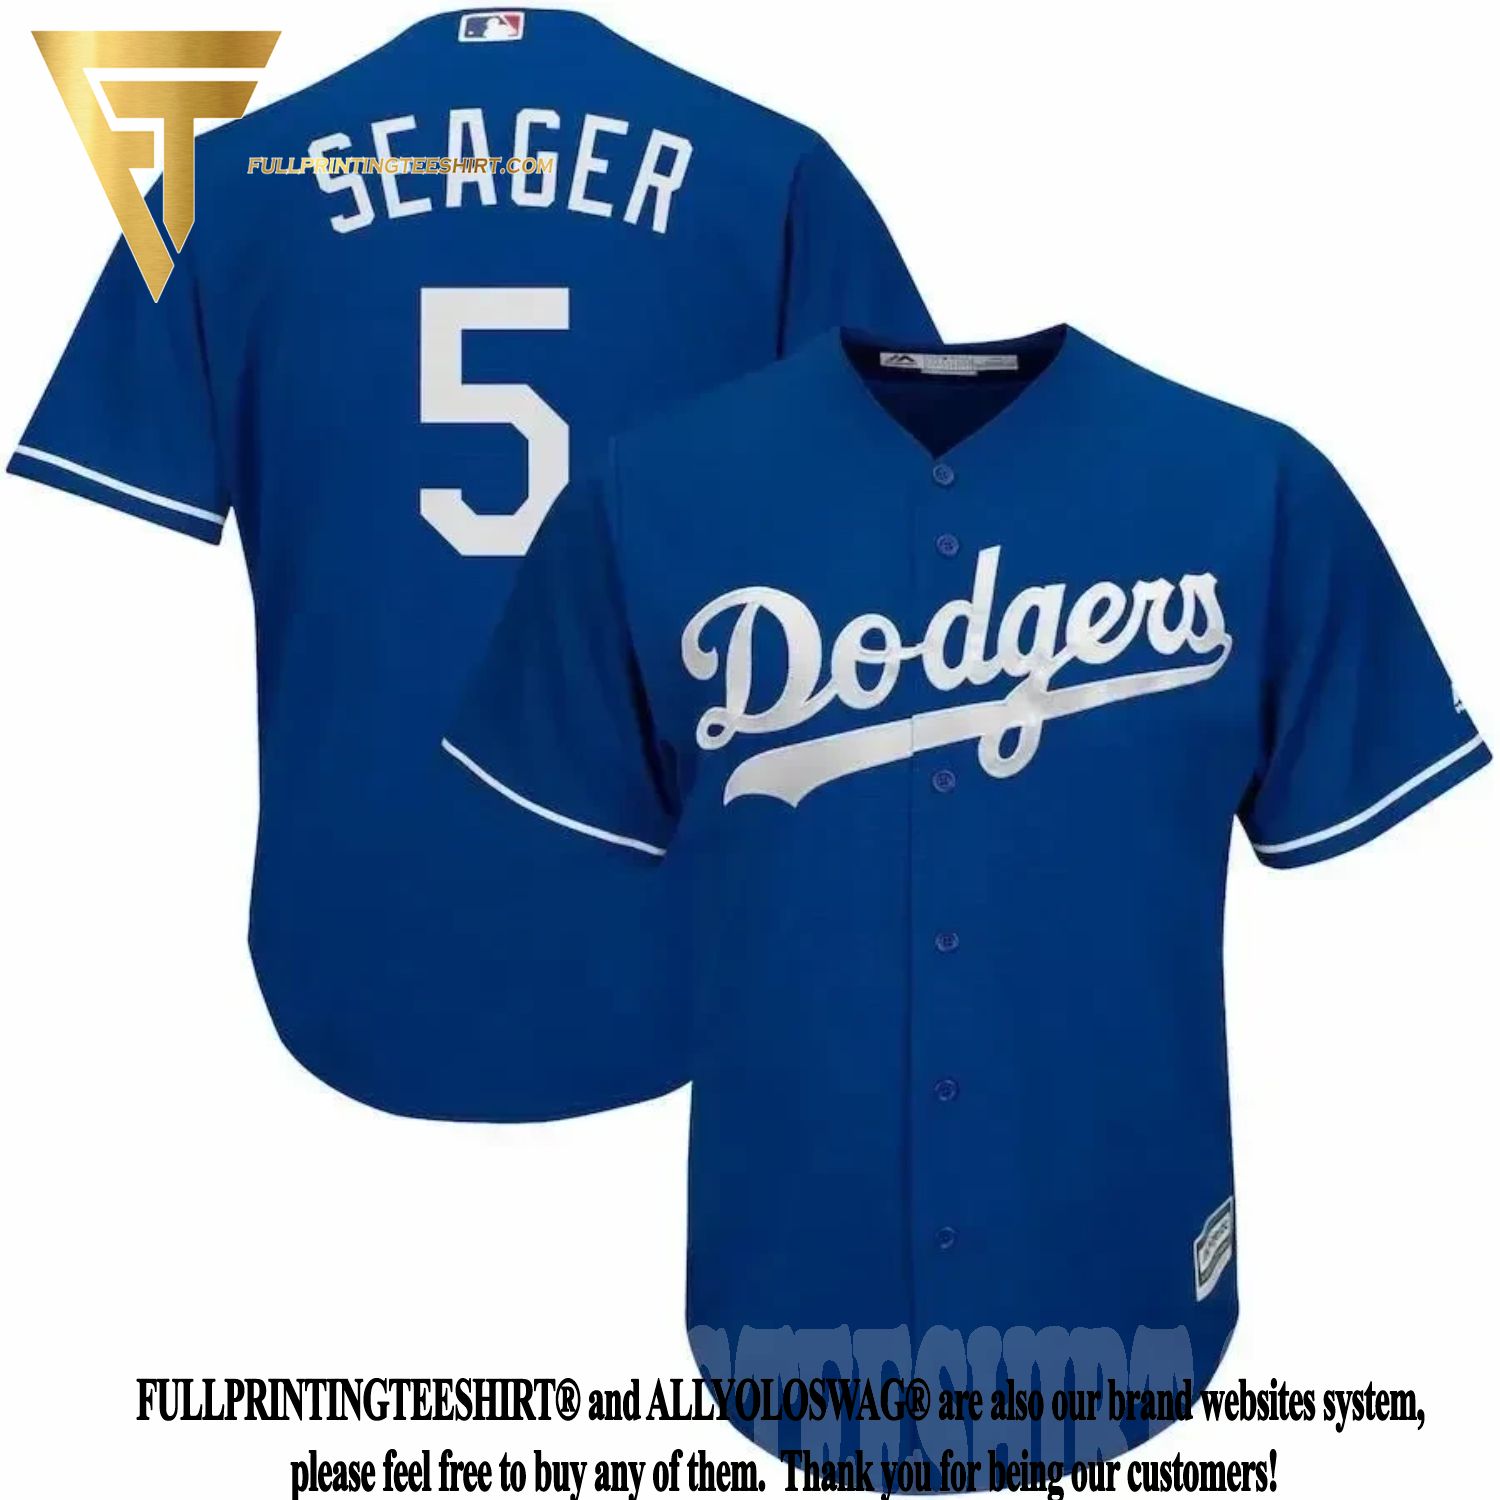 corey seager baseball jersey